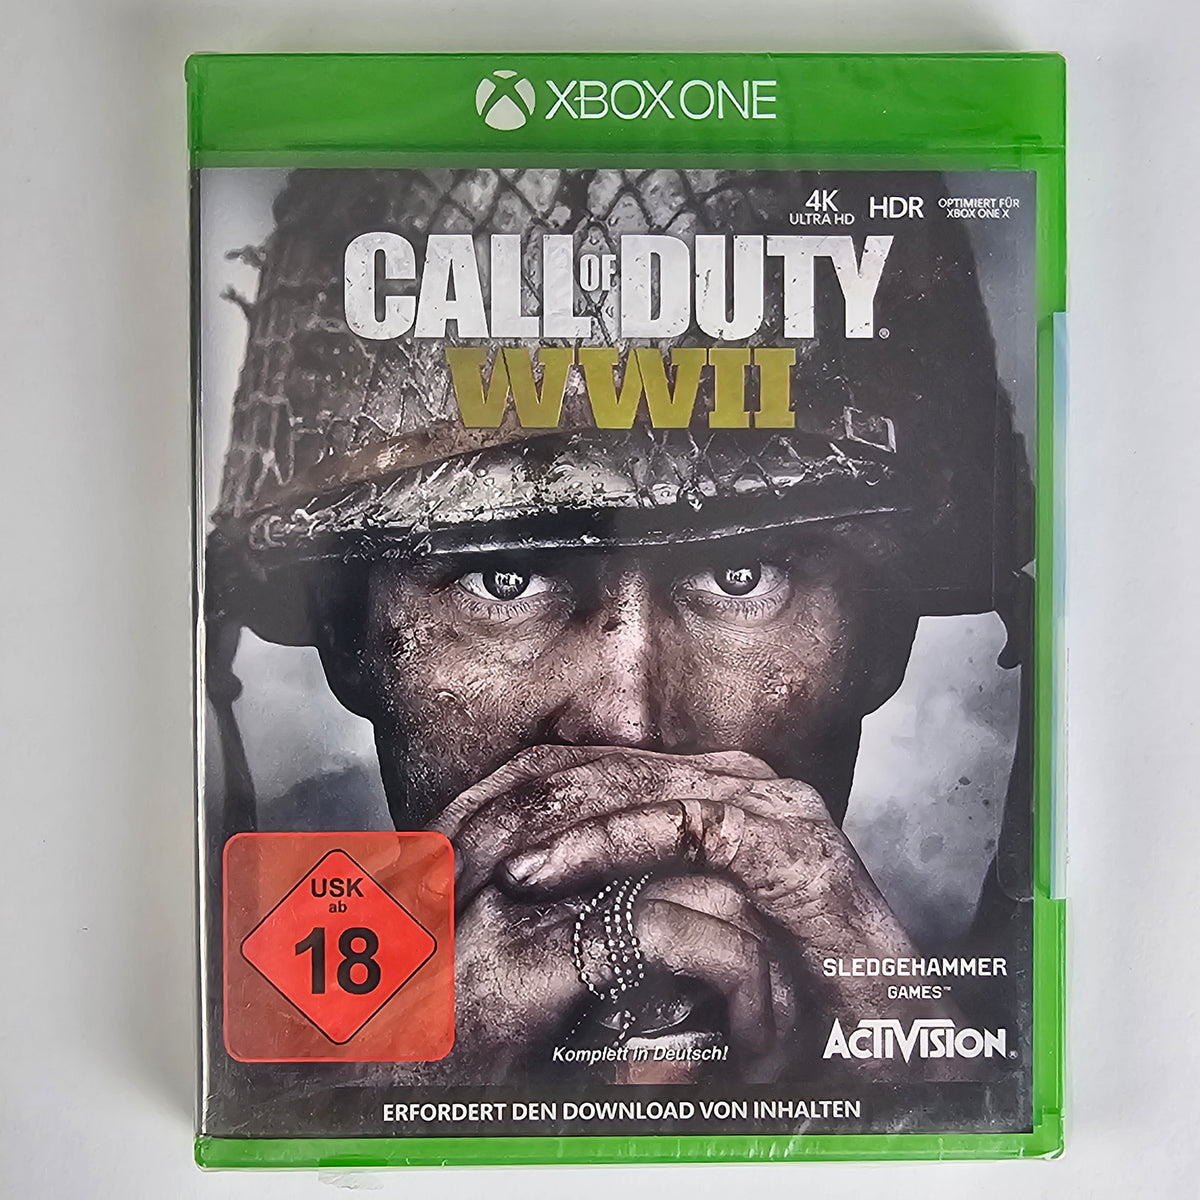 Call of Duty: WWII   [XBOXO] Xbox One